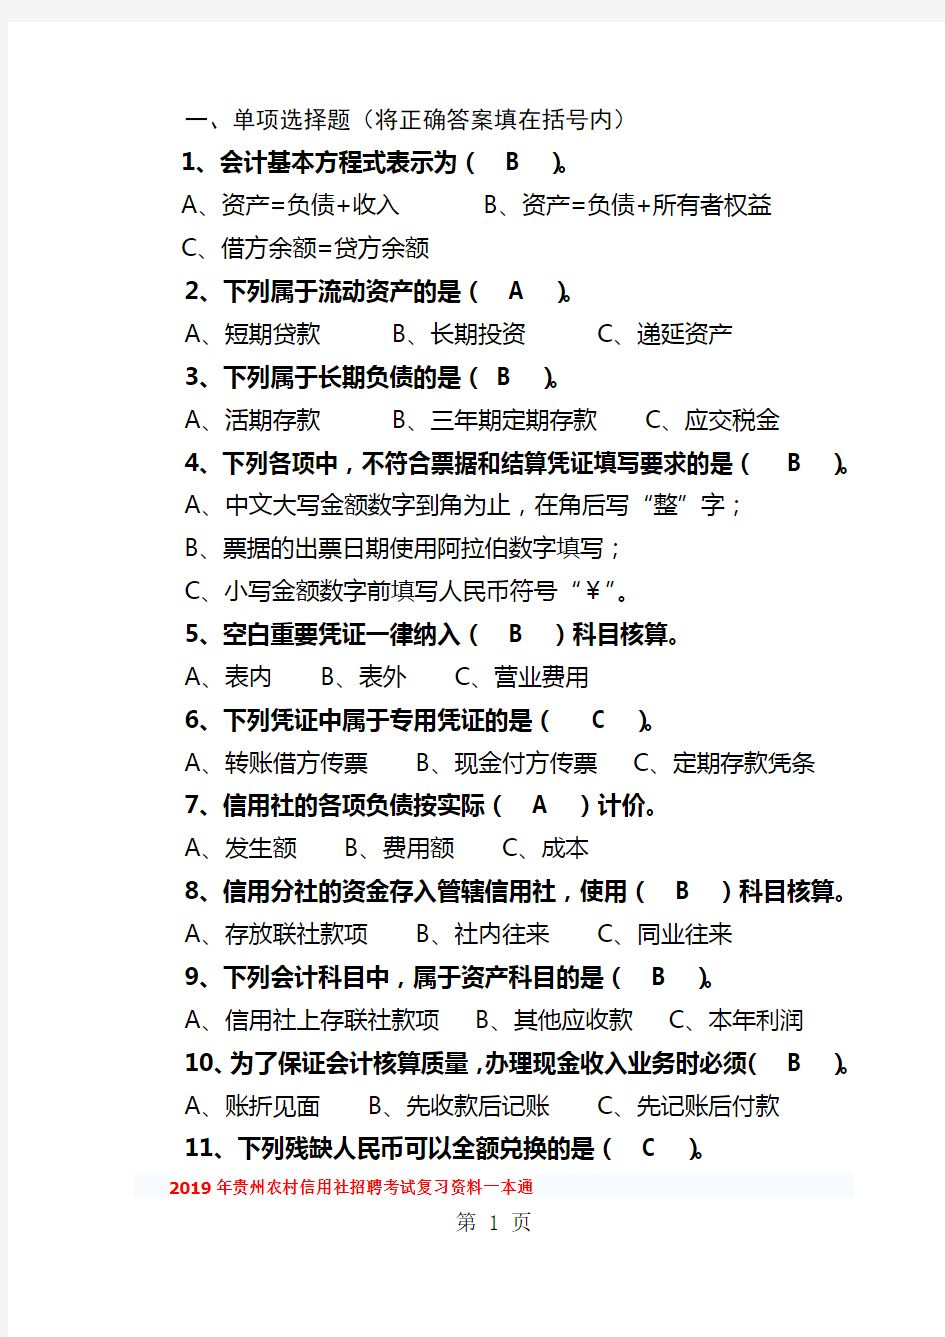 2019年贵州省农村信用社考试复习资料九共23页文档